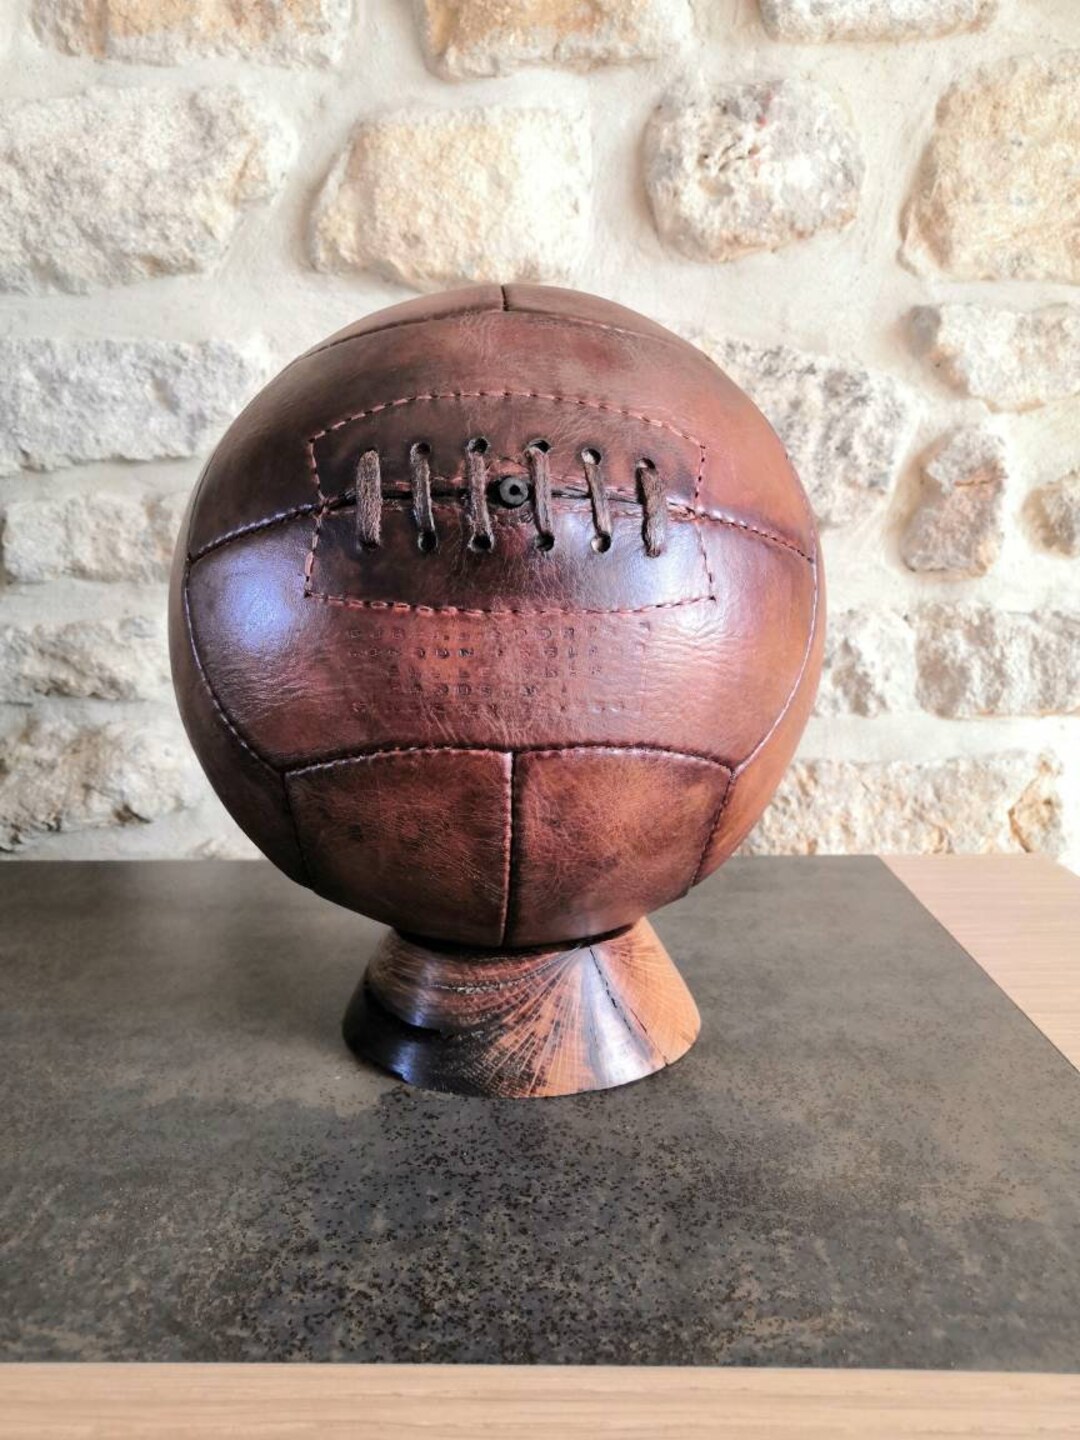 Ballon de foot vintage en cuir idée cadeau sport - All sport vintage